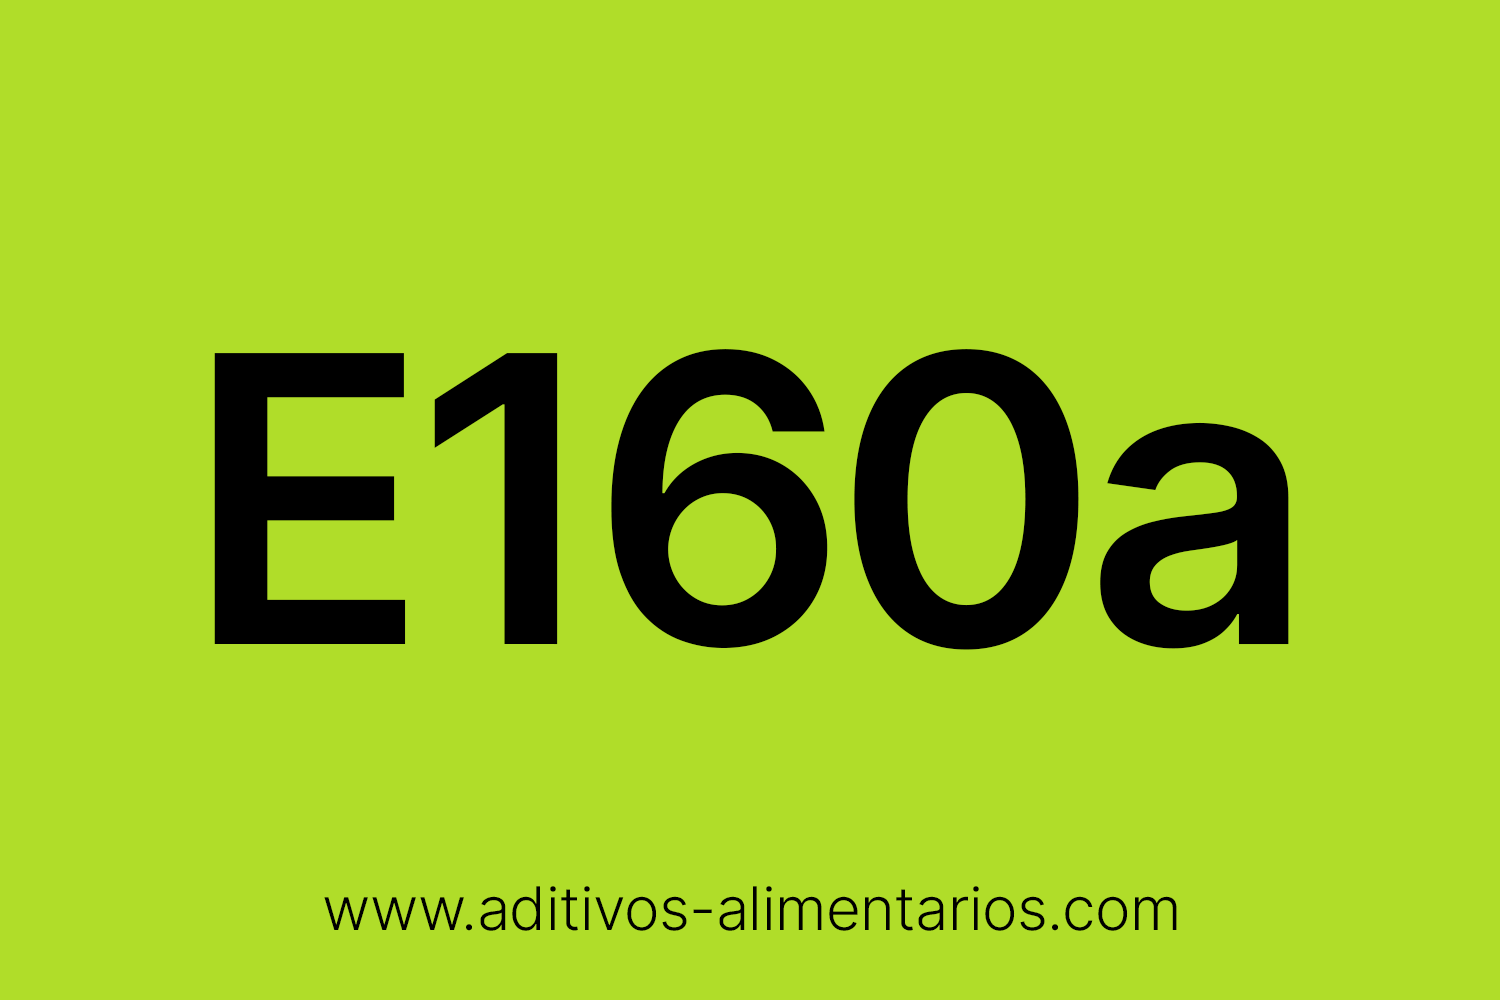 Aditivo Alimentario - E160a(iii) - Betacaroteno de Blakeslea Trispora